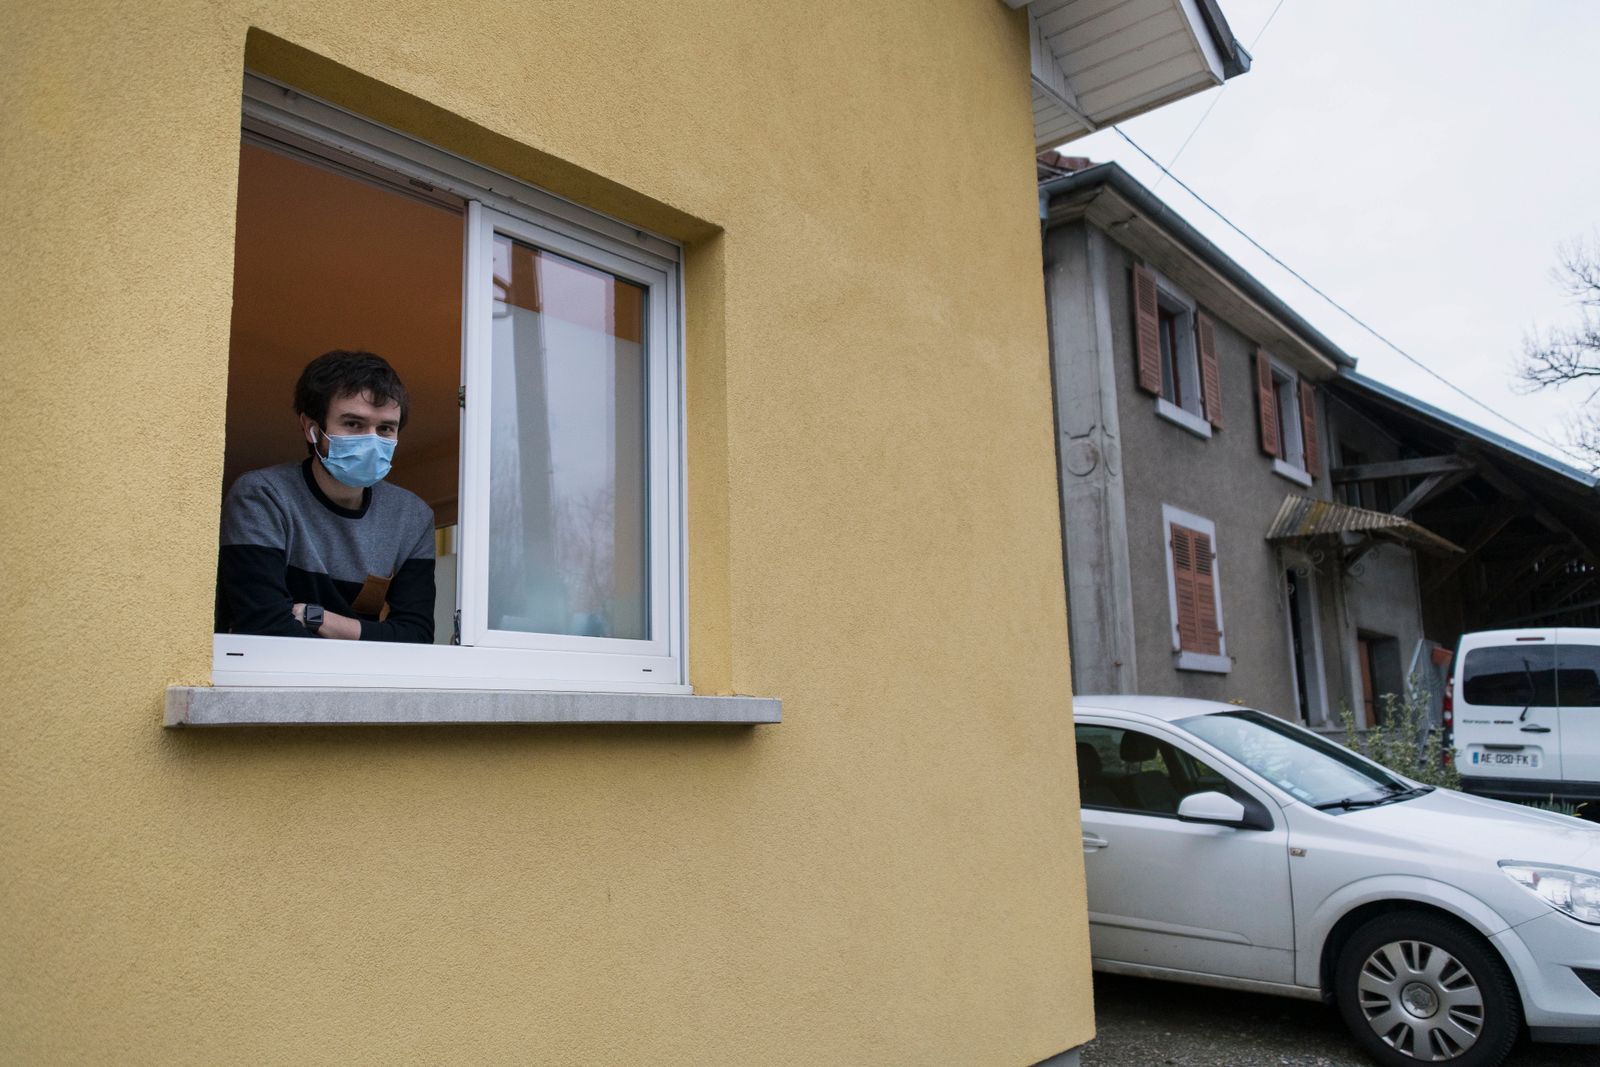 AFP=ชาวฝรั่งเศสสวมหน้ากากขณะอยู่ในบ้าน ระหว่างการแพร่ระบาดของไวรัสโคโรนาสายพันธุ์ใหม่ ต้นตอโรคโควิด-19